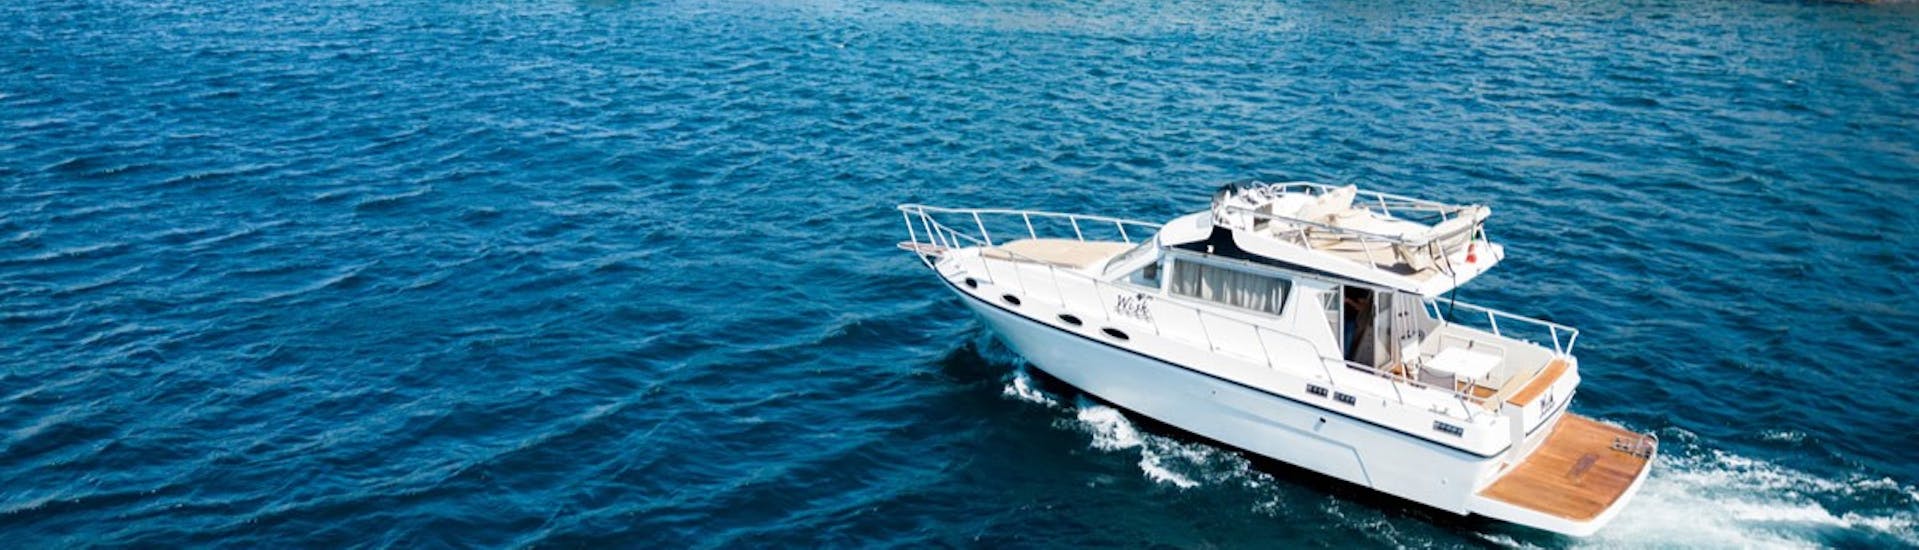 Das Boot Wish genutzt während der Privaten Bootstour von Catania zu den Zyklopeninseln mit Apéritif mit Wish Boat Rent Catania.